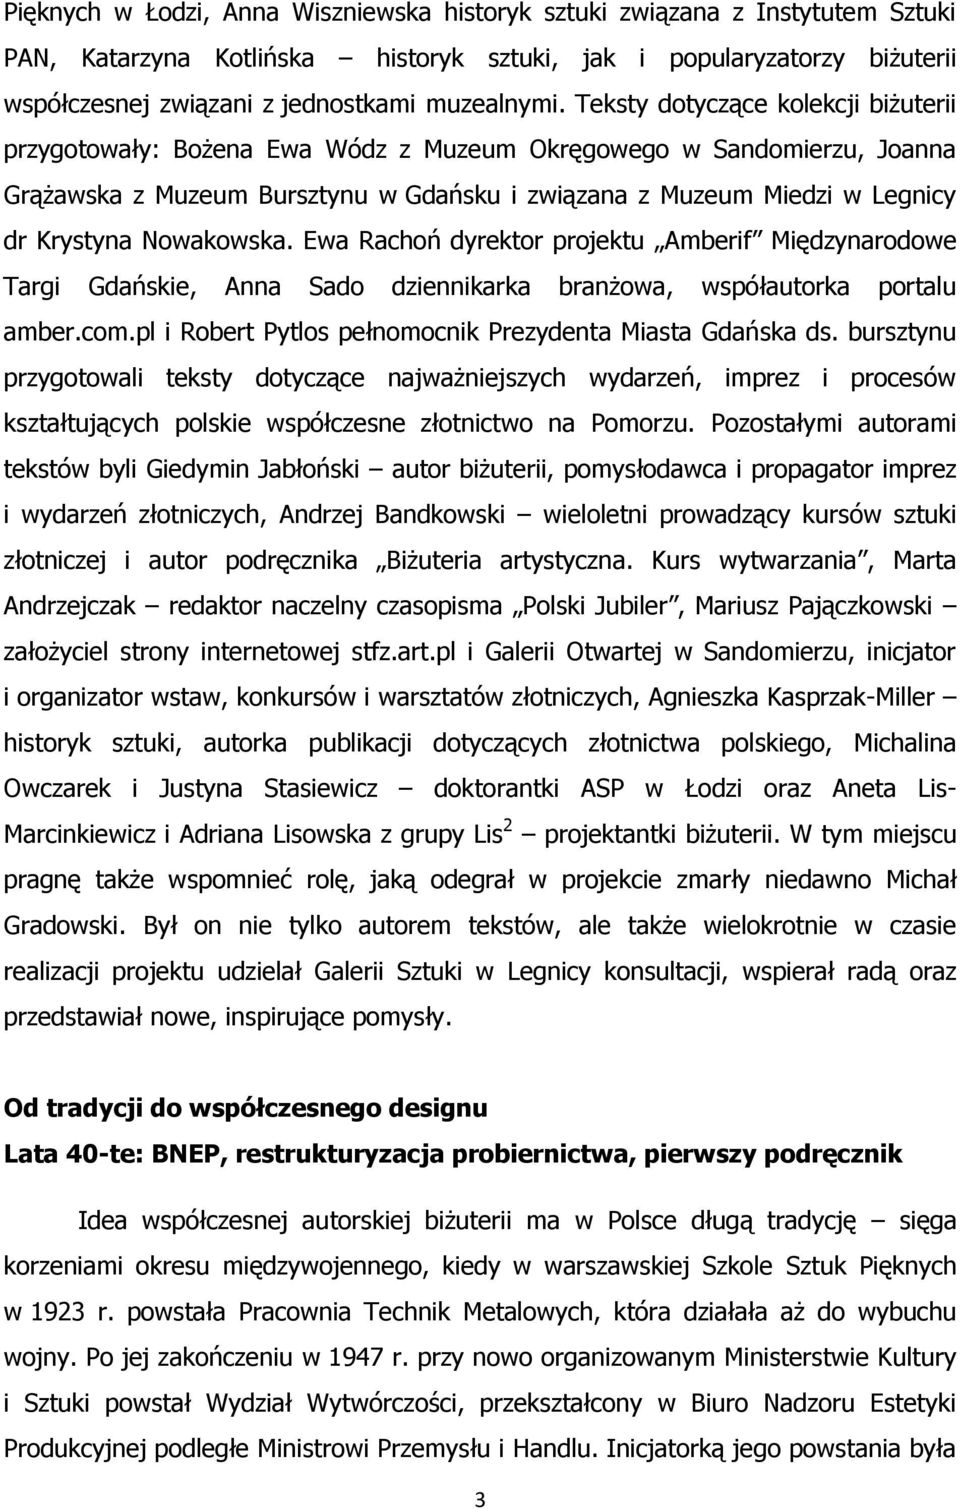 Polska biżuteria artystyczna po 1945 r. - PDF Darmowe pobieranie